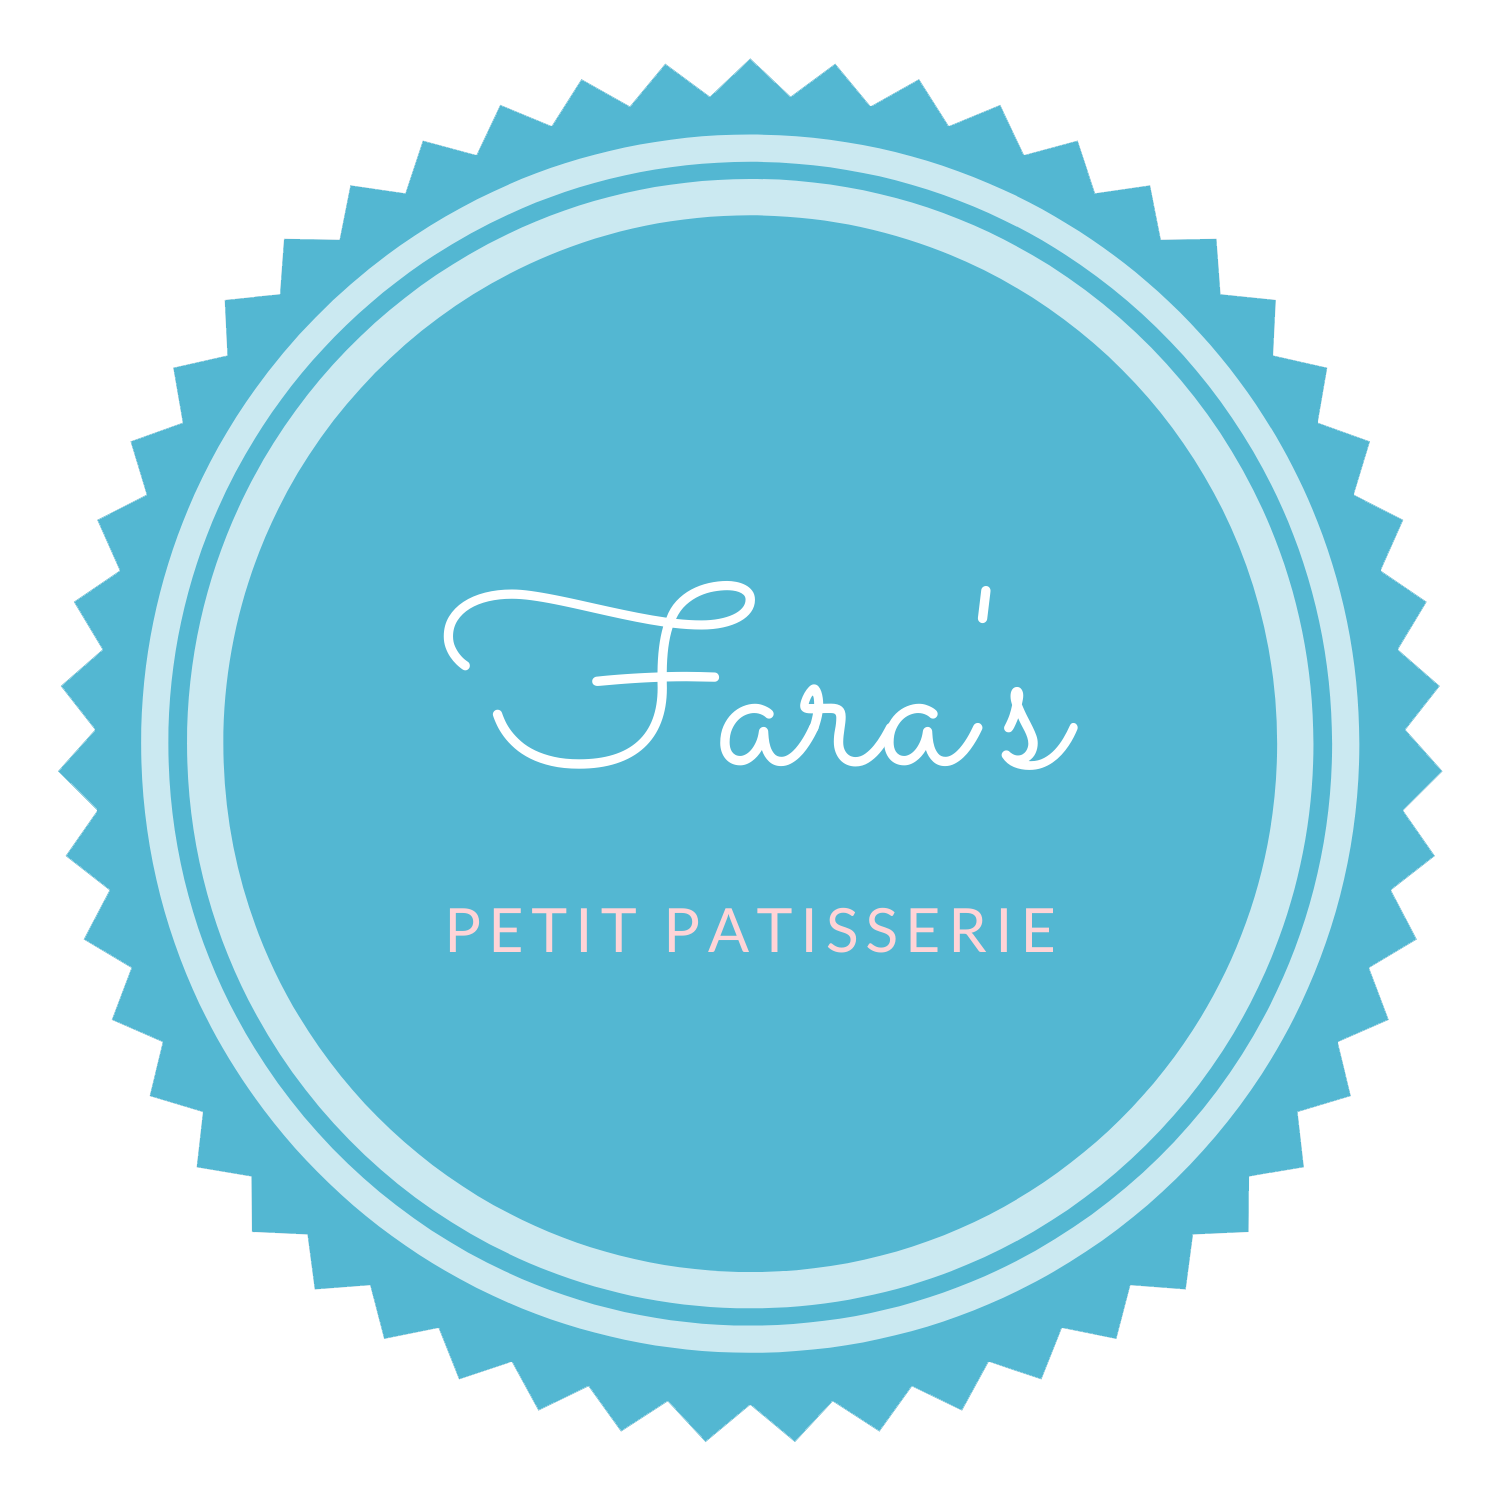 Fara's Petit Patisserie